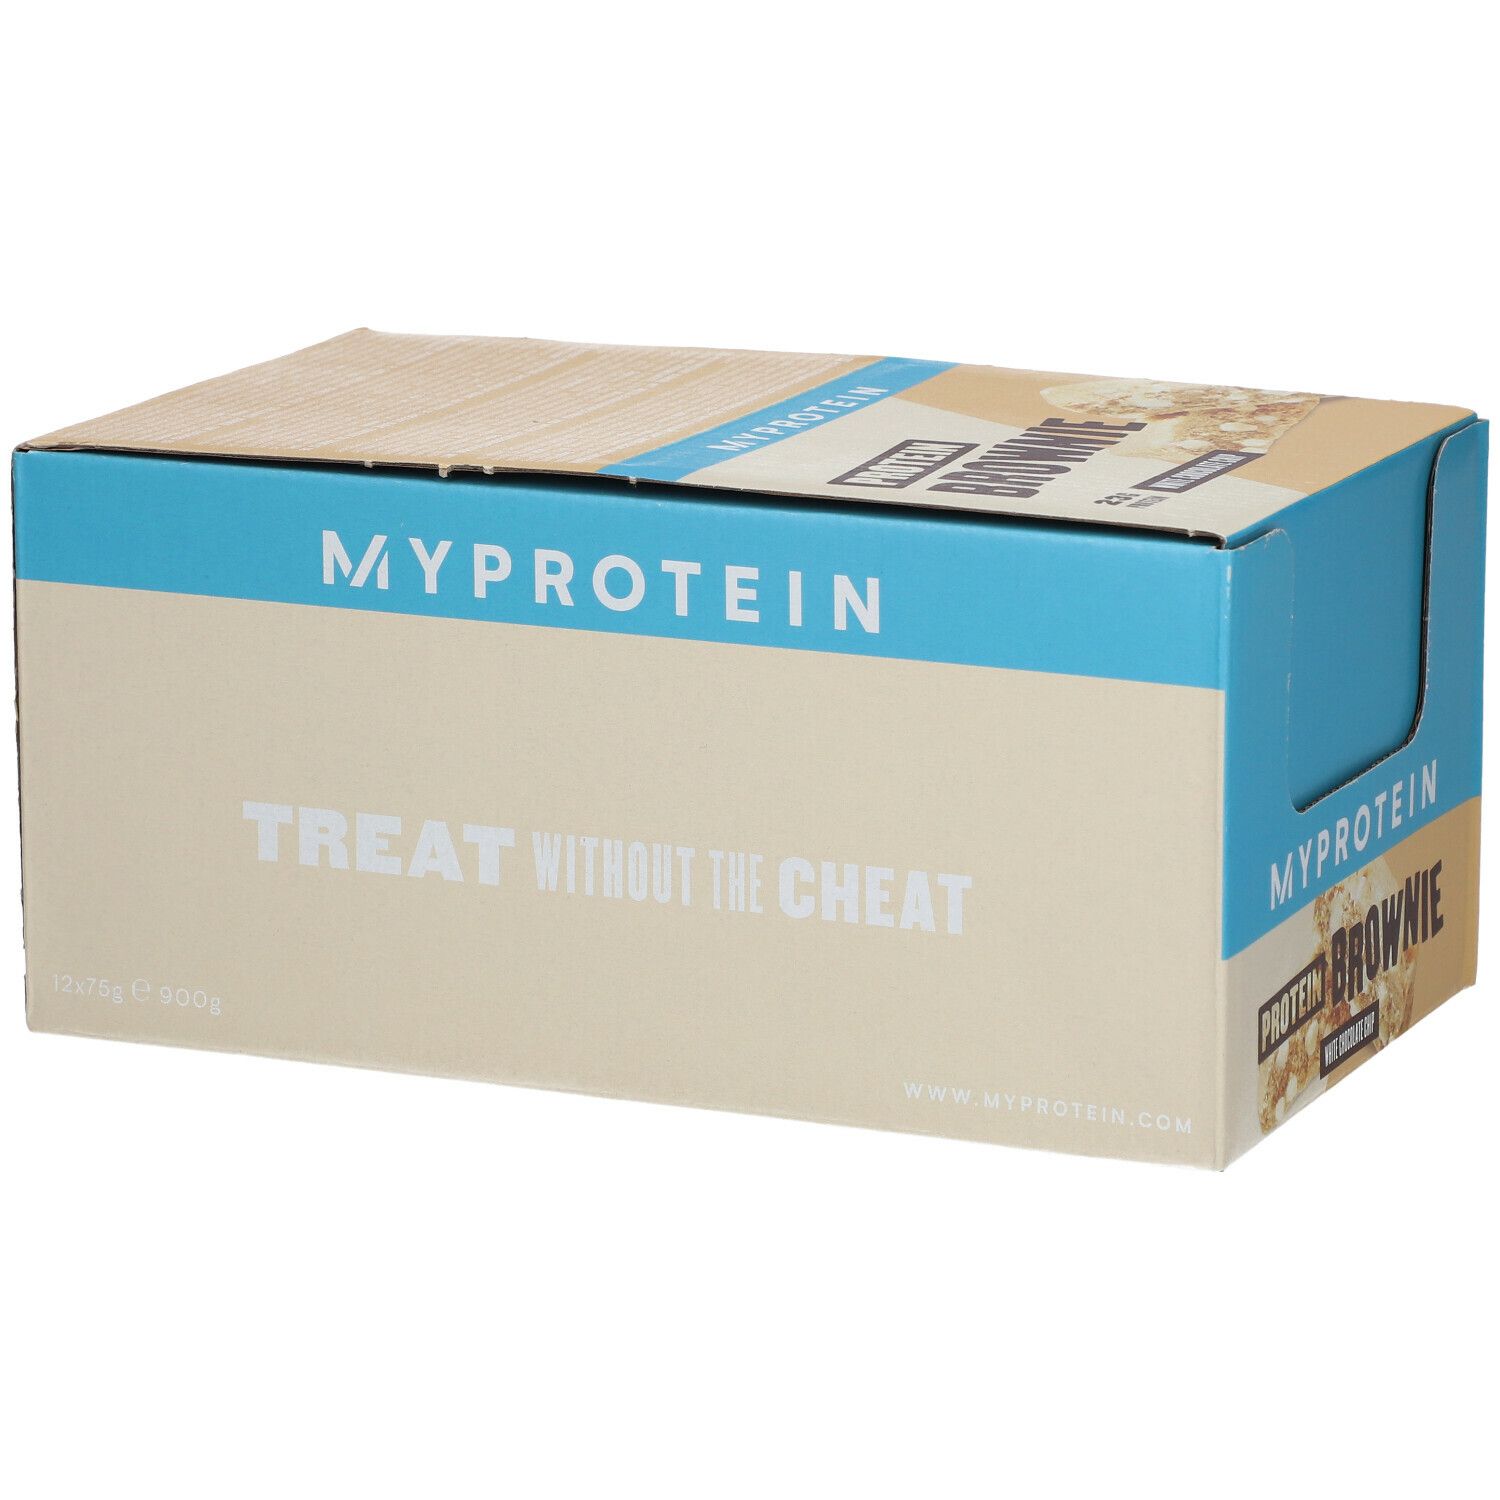 MyProtein® Protein Brownie, White Chocolate Chip